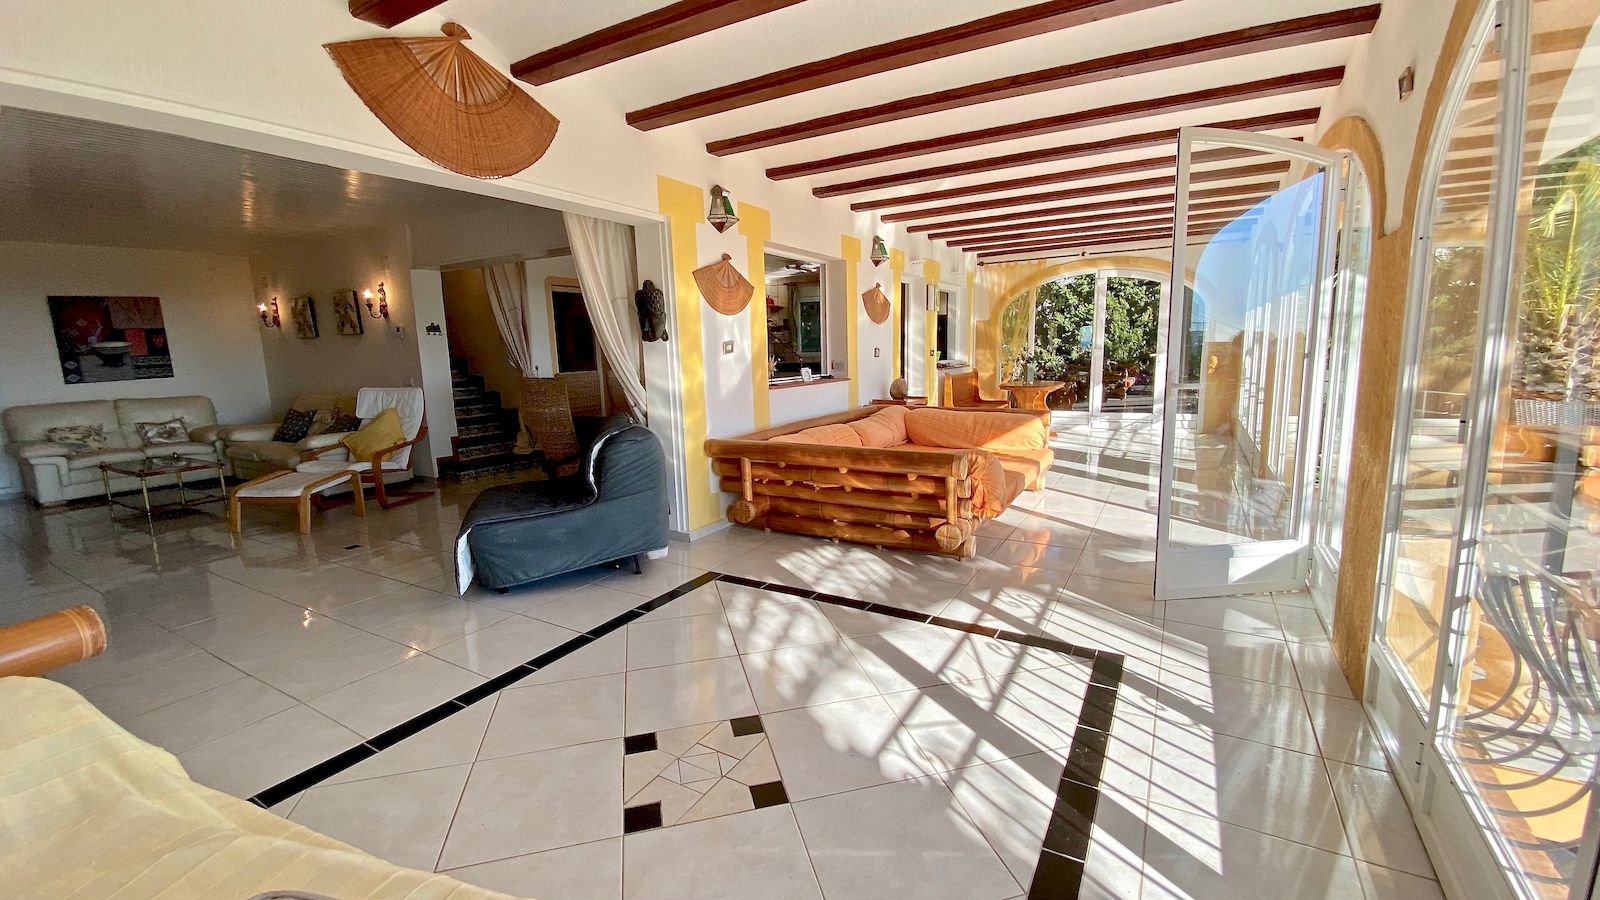 Investeringsmogelijkheid - Villa te koop met uitzicht op zee - Costa Nova Ambolo